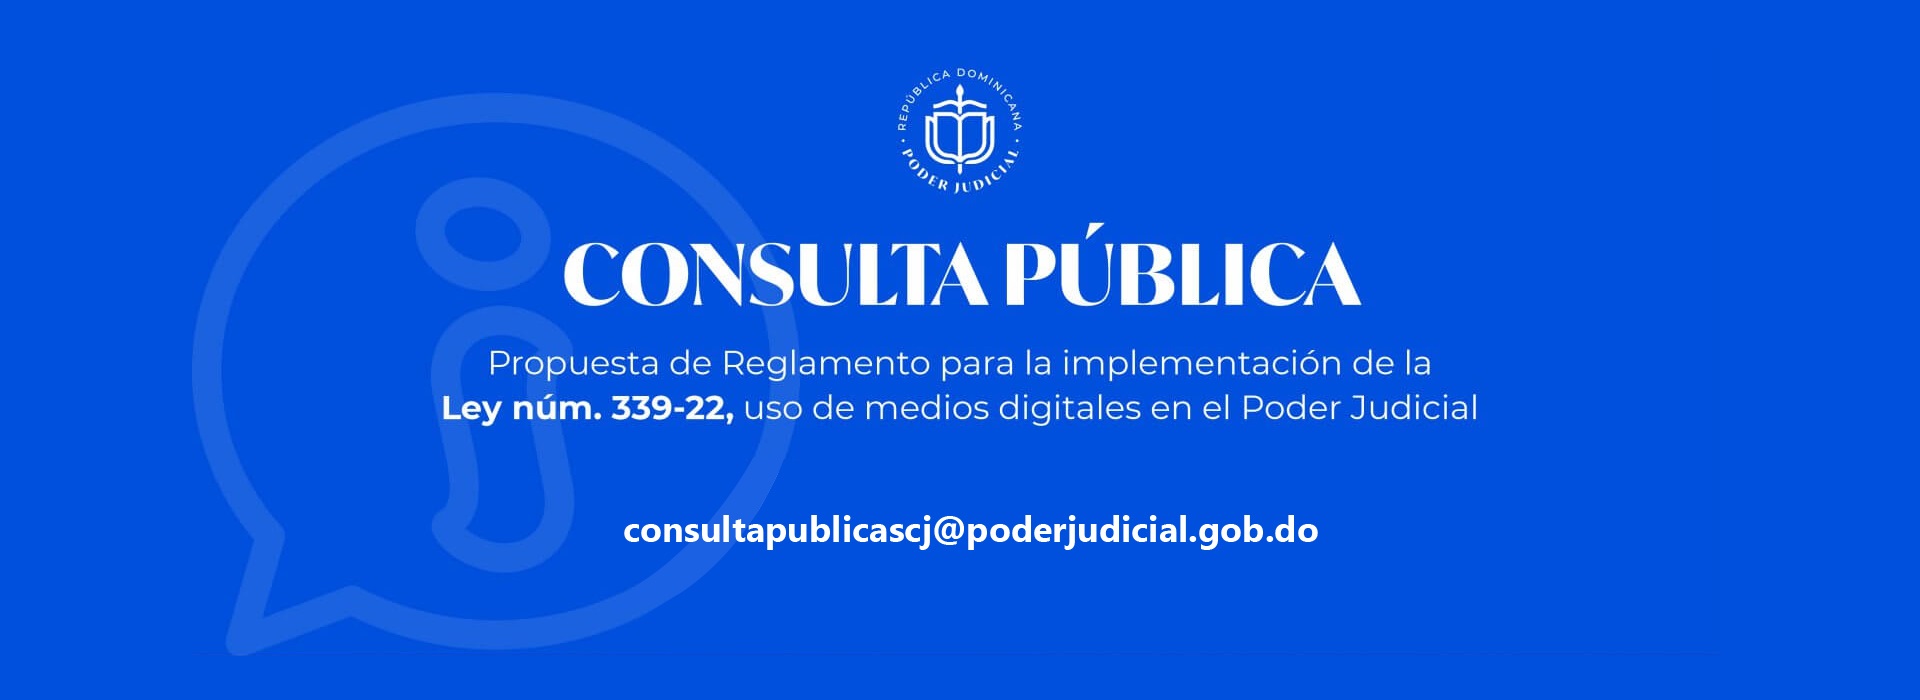 Banner Consulta Pública